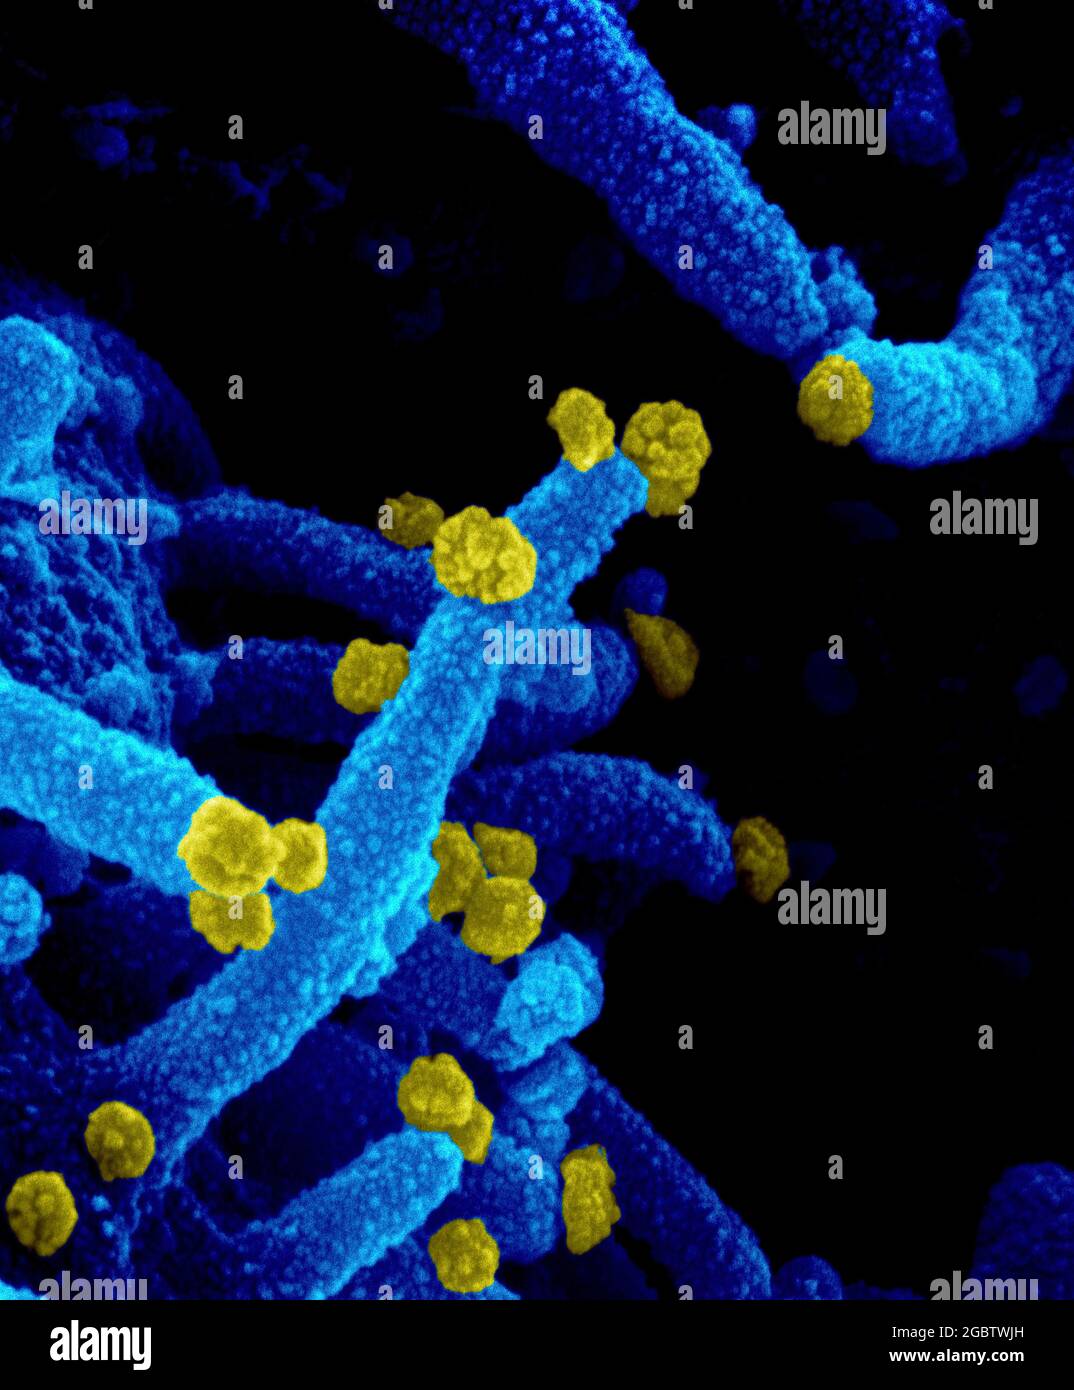 Novel Coronavirus SARS-COV-2 questa immagine al microscopio elettronico a scansione mostra SARS-COV-2 (particelle rotonde gialle) che emergono dalla superficie di una cellula coltivata nel laboratorio. SARS-COV-2, noto anche come 2019-nCoV, è il virus che causa COVID-19. Immagine catturata e colorata presso i Rocky Mountain Laboratories di Hamilton, Montana. Credito: NIAID Foto Stock